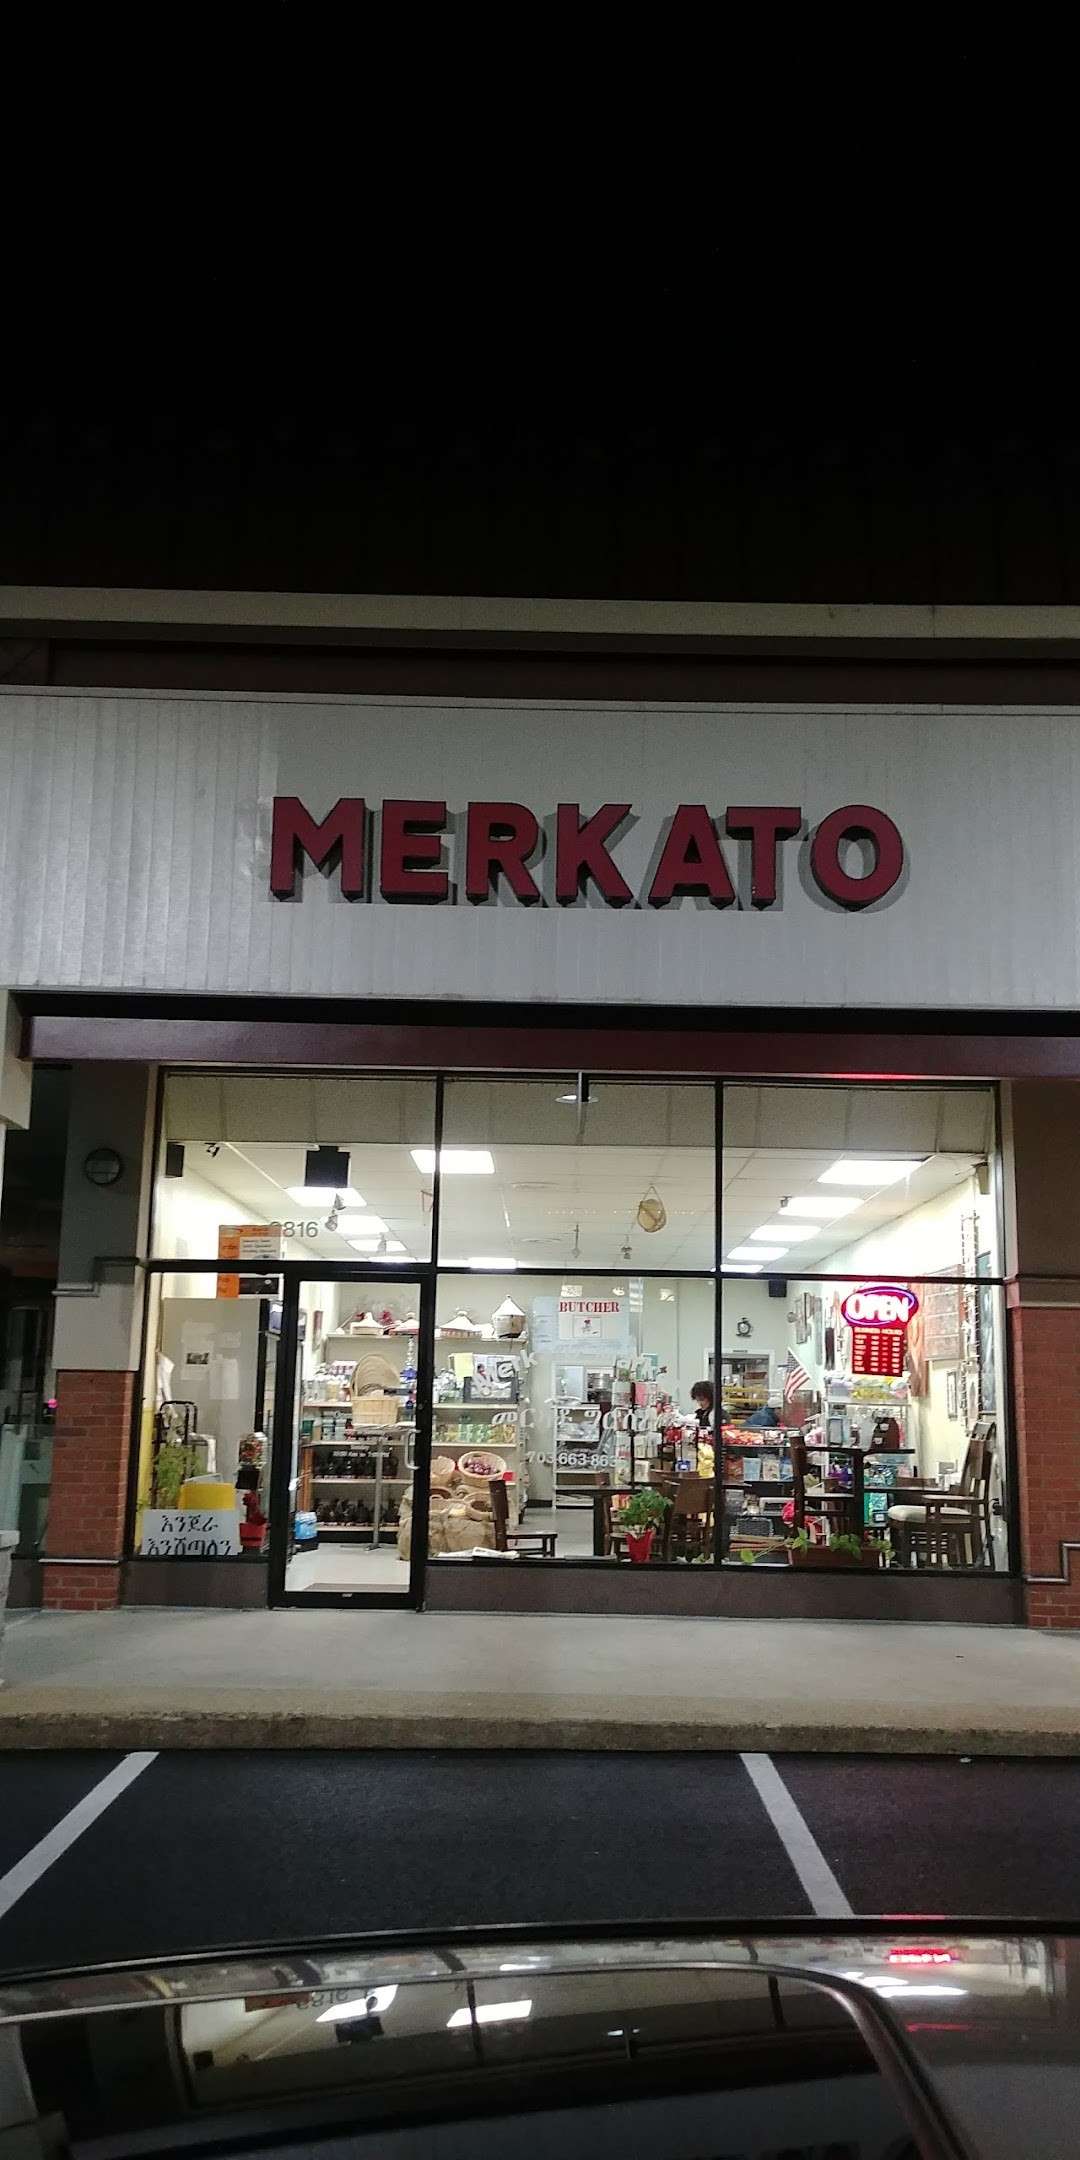 Merkato